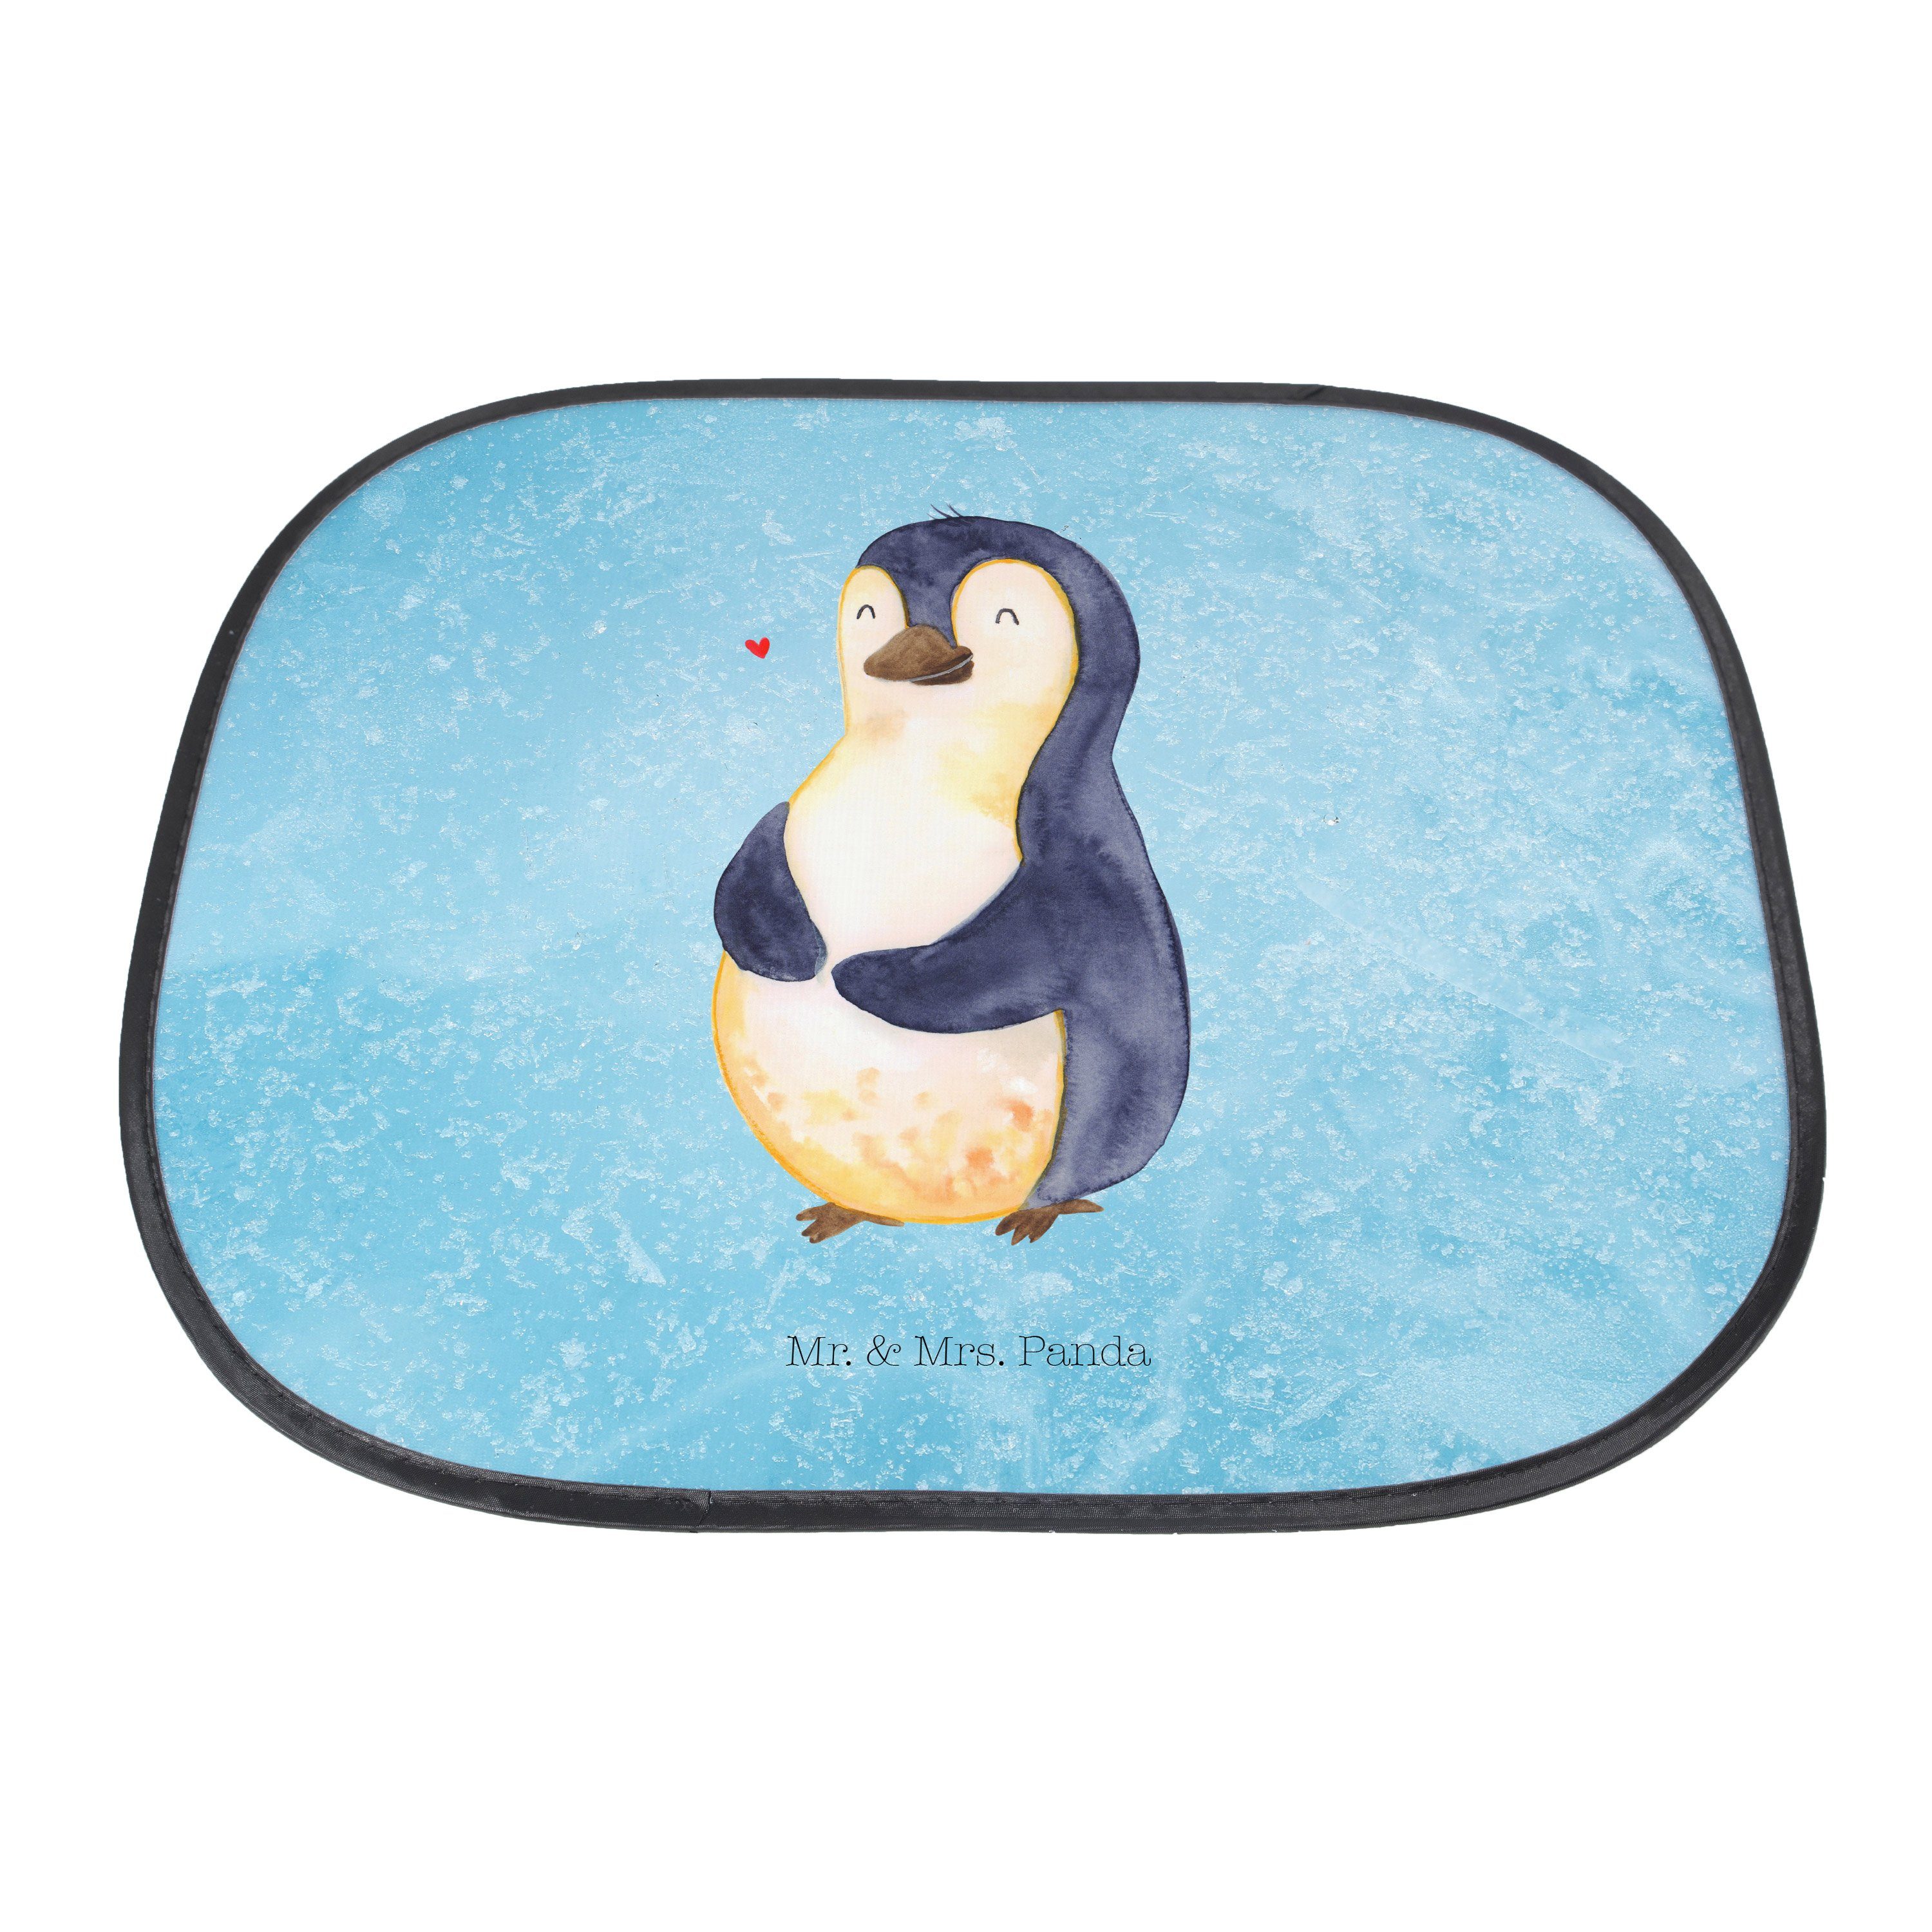 Sonnenschutz Seidenmatt Mrs. Mr. glücklich, Selbstliebe, - Eisblau Auto Sonne, & Pinguin Diät Panda, - Geschenk,